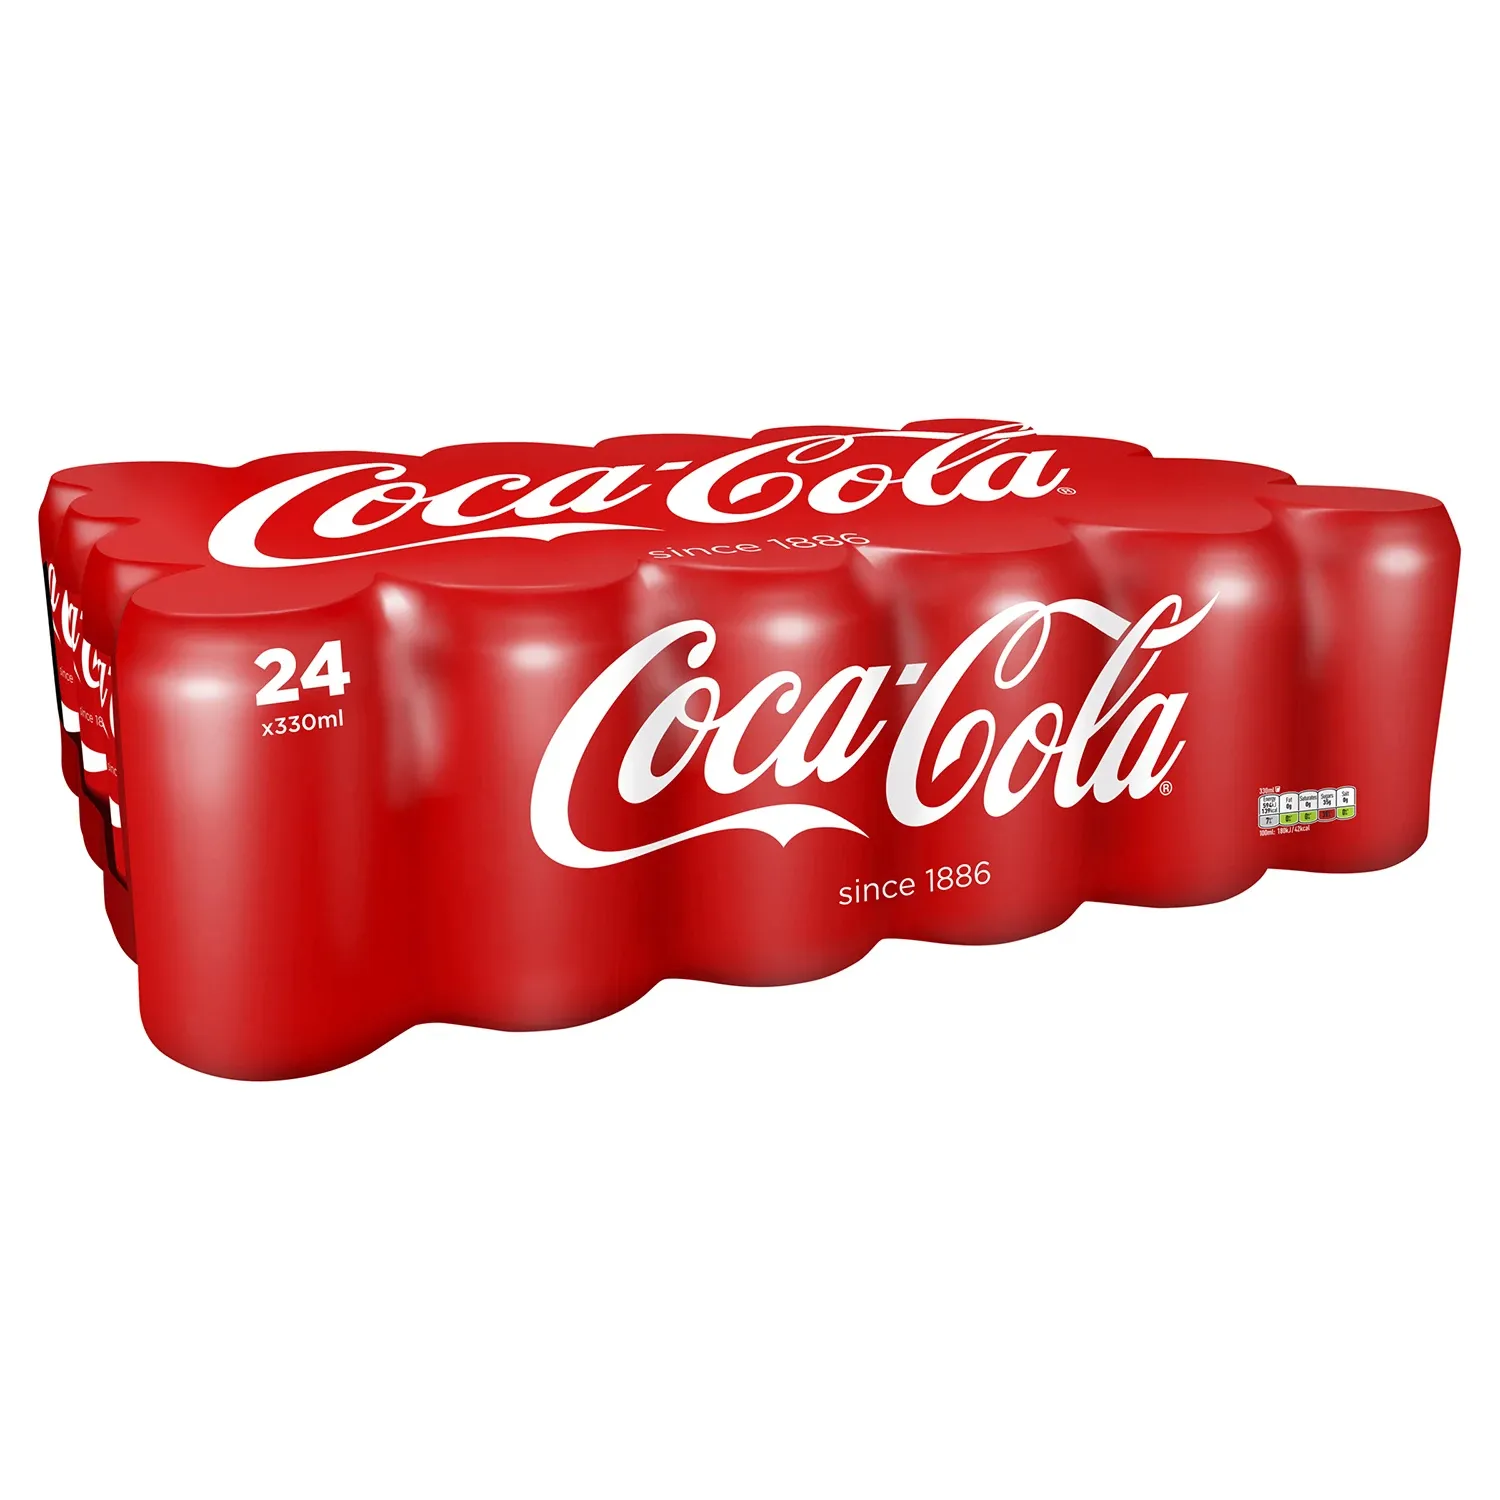 330 मिलीलीटर के डिब्बों में पेप्सी शीतल पेय, 24 डिब्बों के मामले में पैक किया गया, प्रत्येक थोक सौदों के लिए स्टॉक में उपलब्ध है, कोका कोला 330 मिलीलीटर स्प्राइट